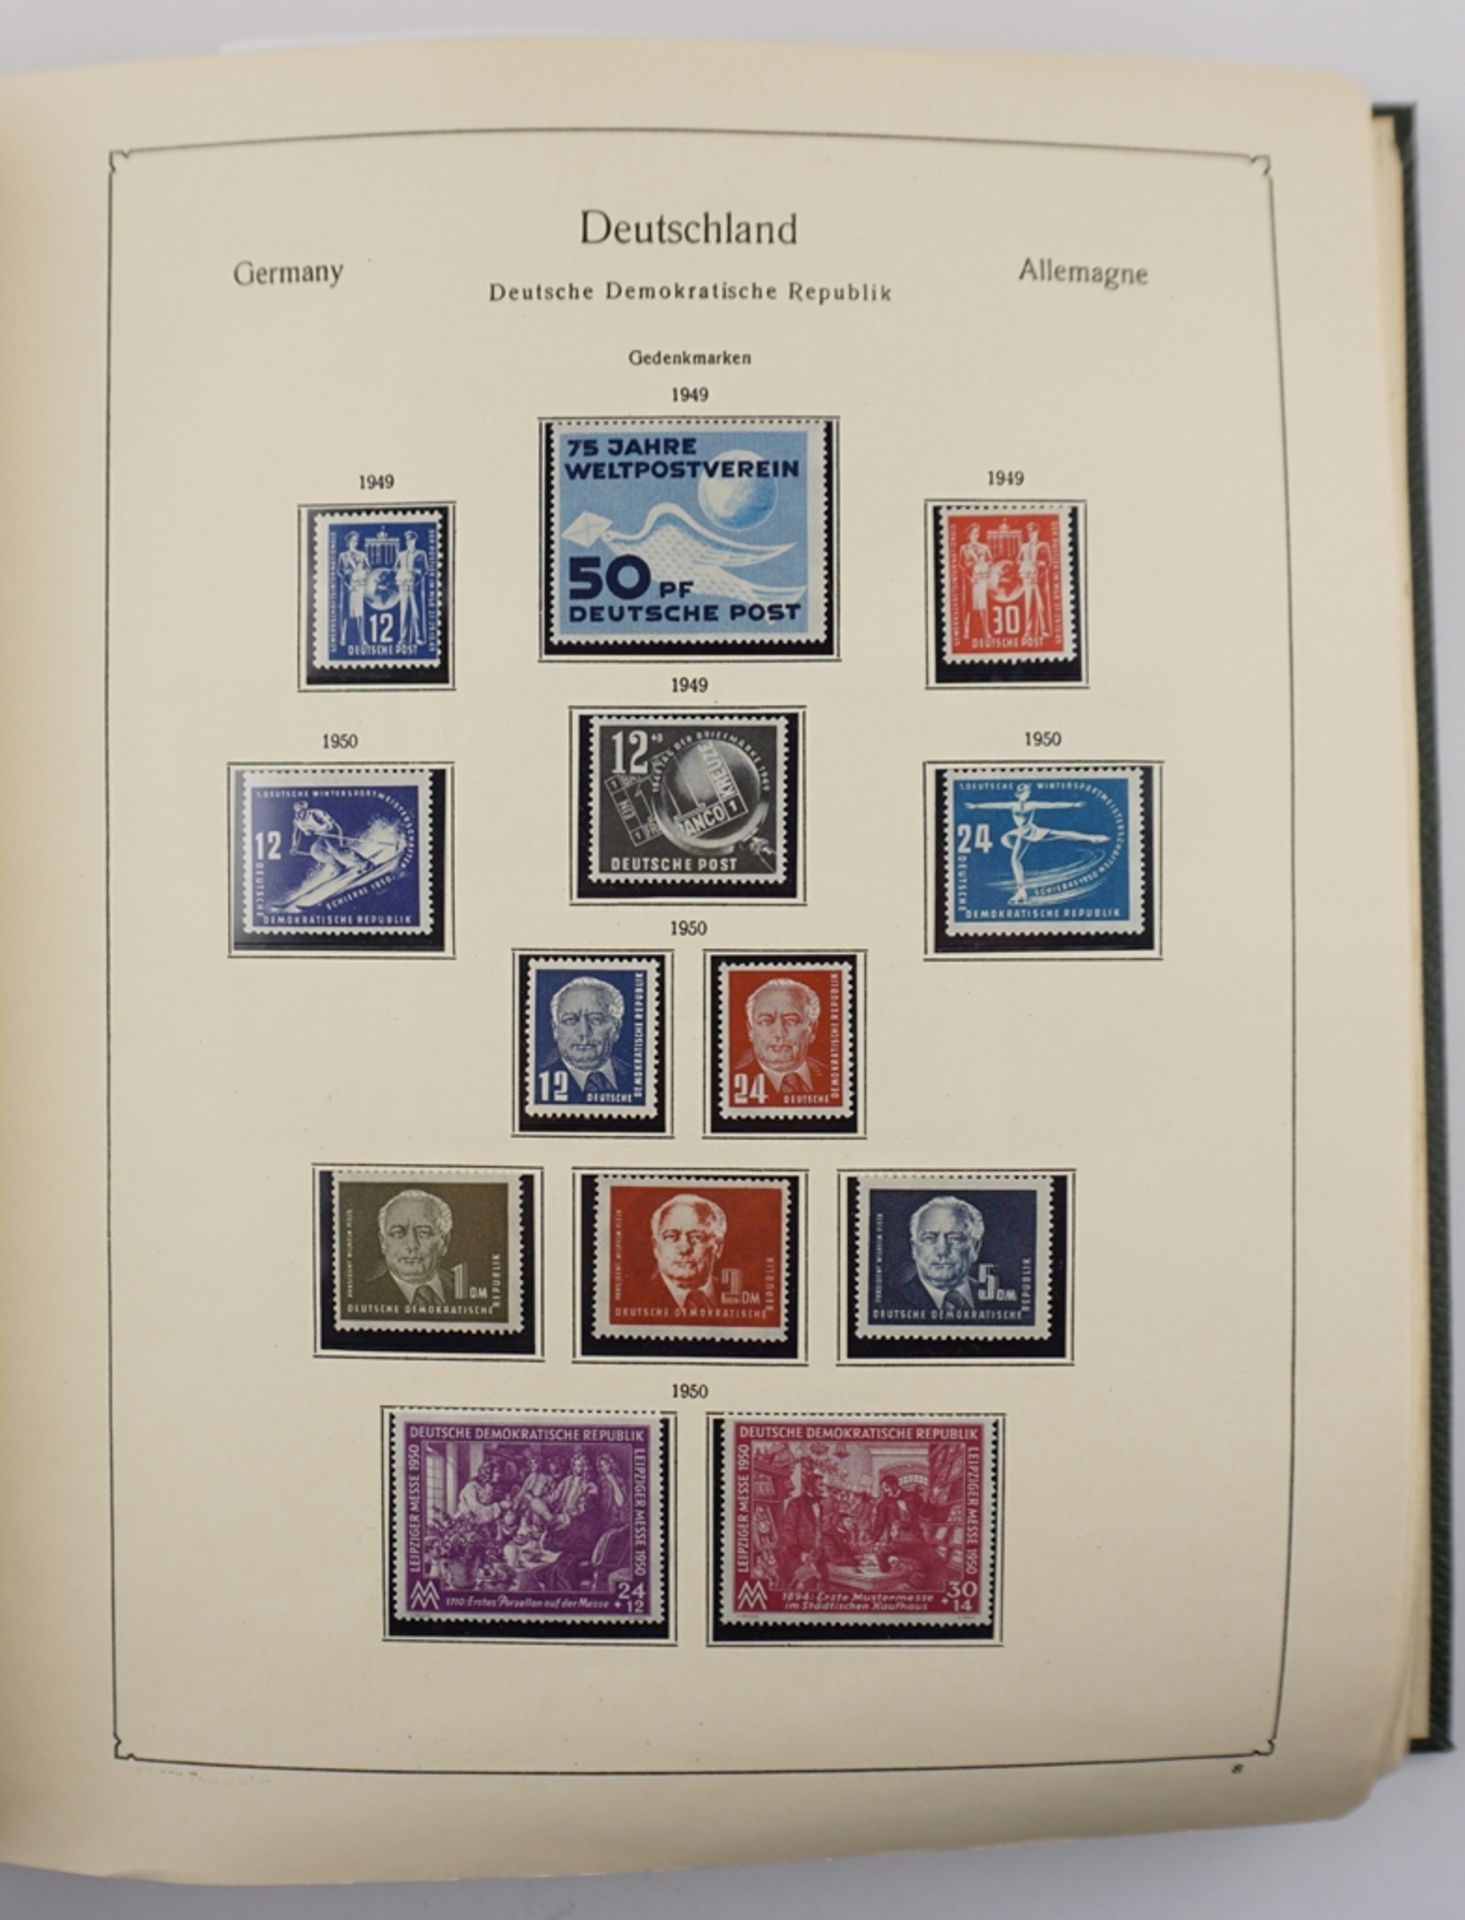 2 Alben Briefmarken DDR von 1949 - 1978 und Alliierte Besetzung sowjetische Zone, Beigabe: 3 Alben